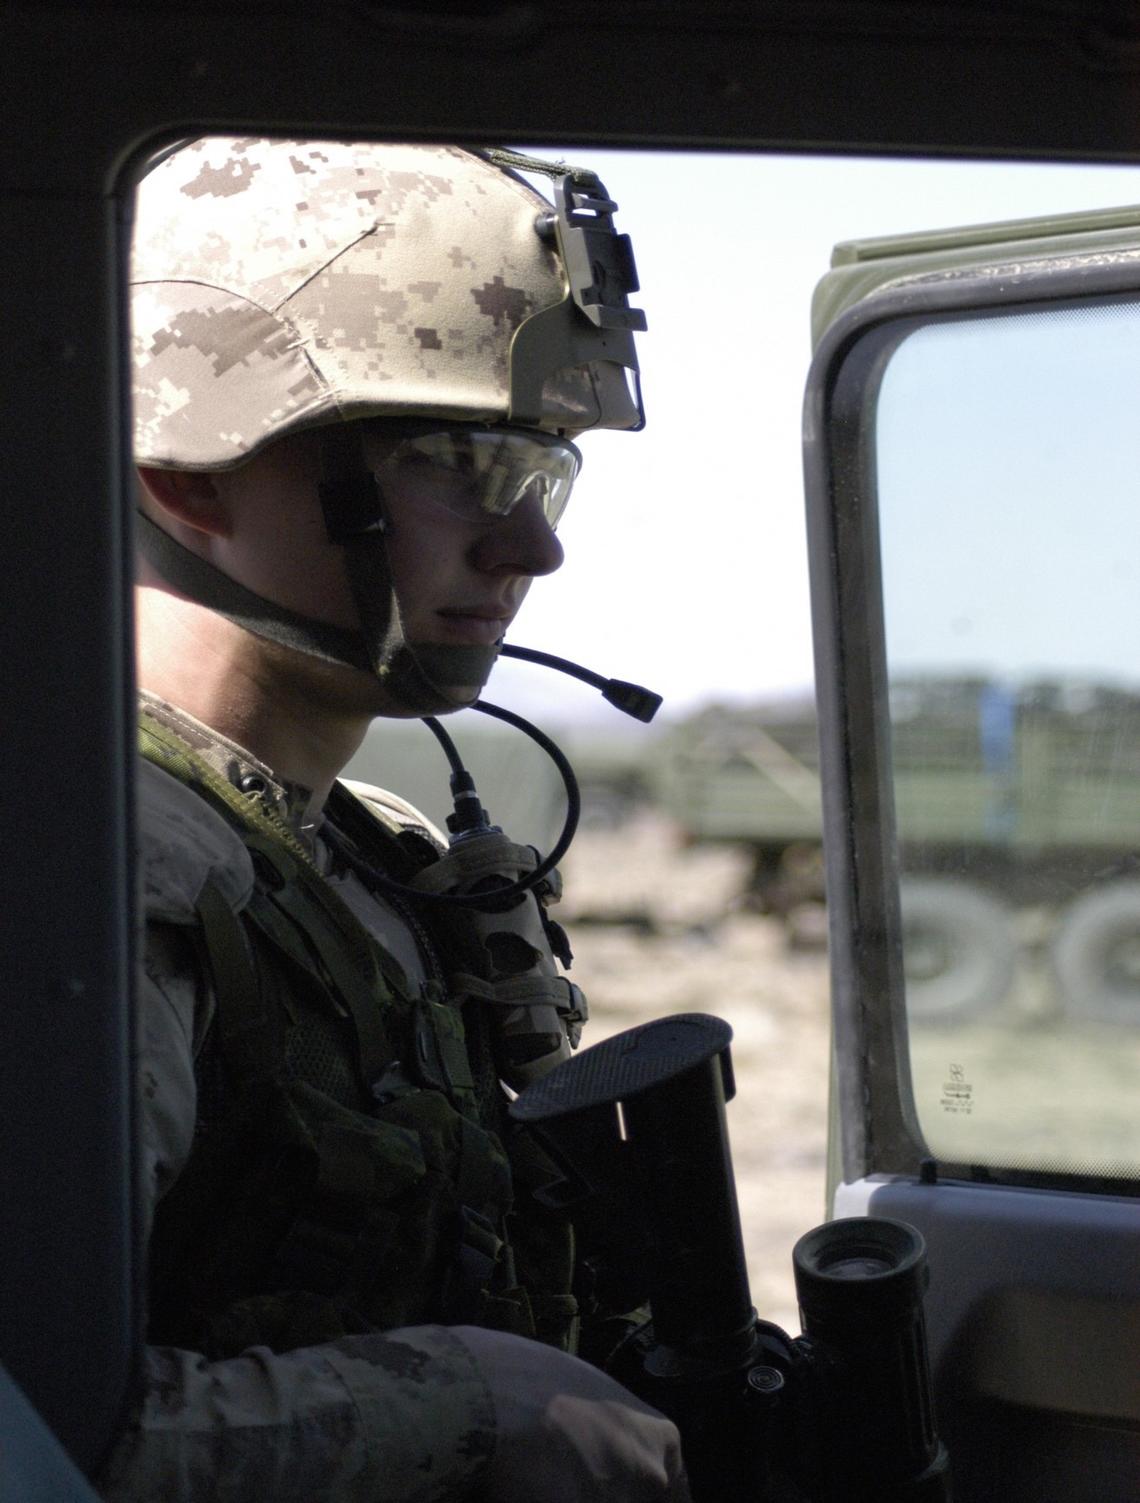 Ryan Shudra on patrol in Afghanistan in 2006.